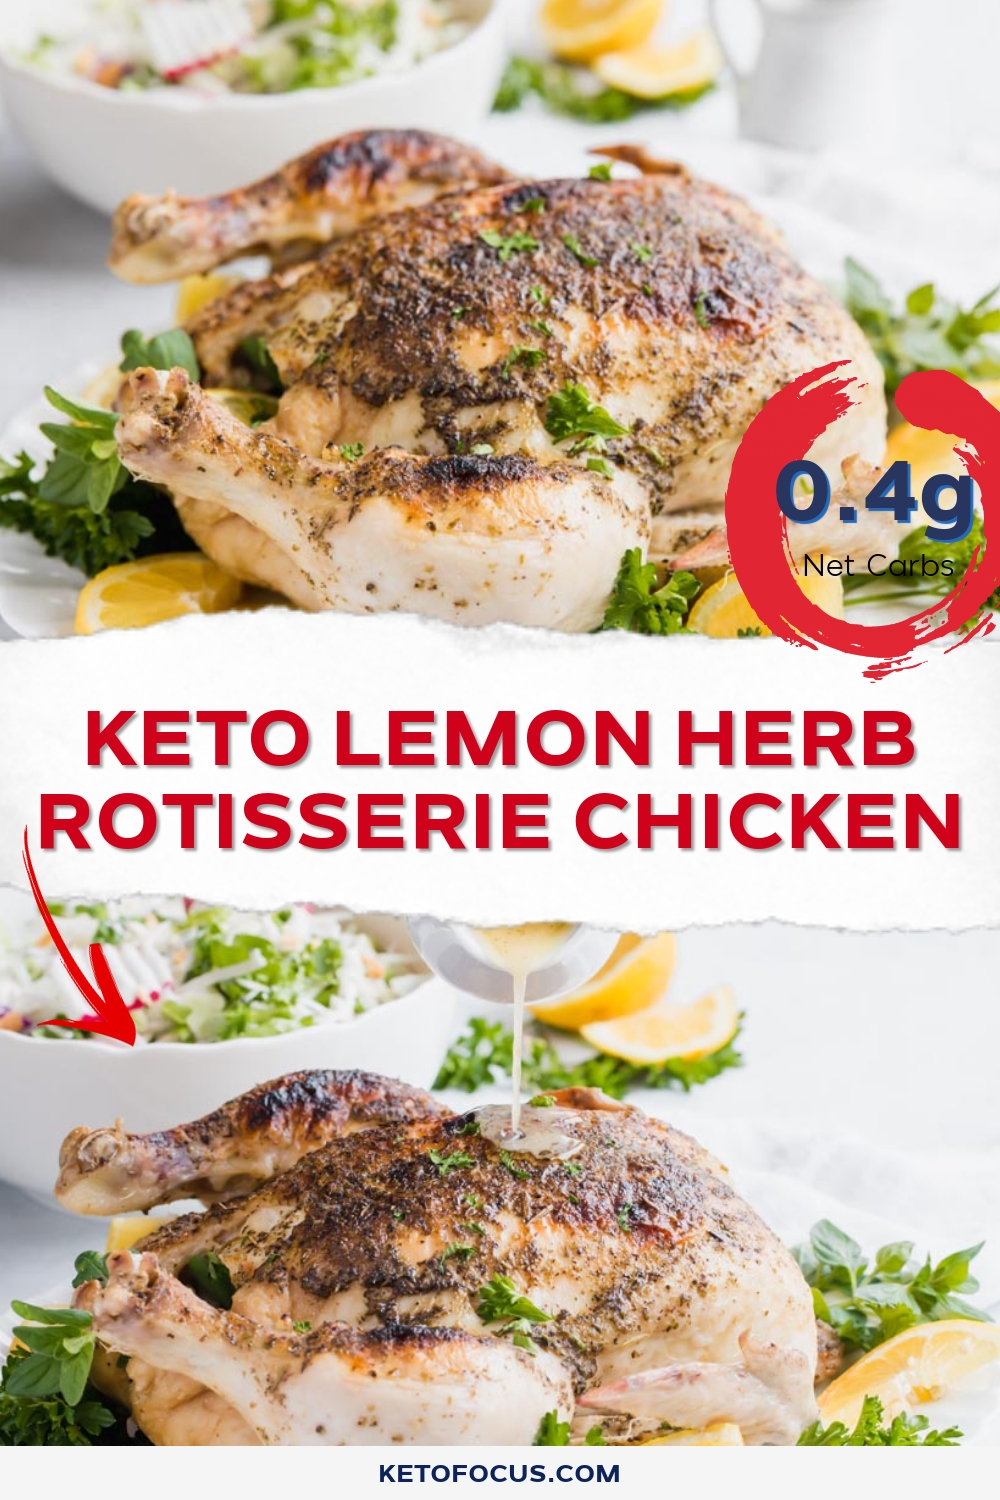 Keto Lemon Herb Rotisserie Chicken